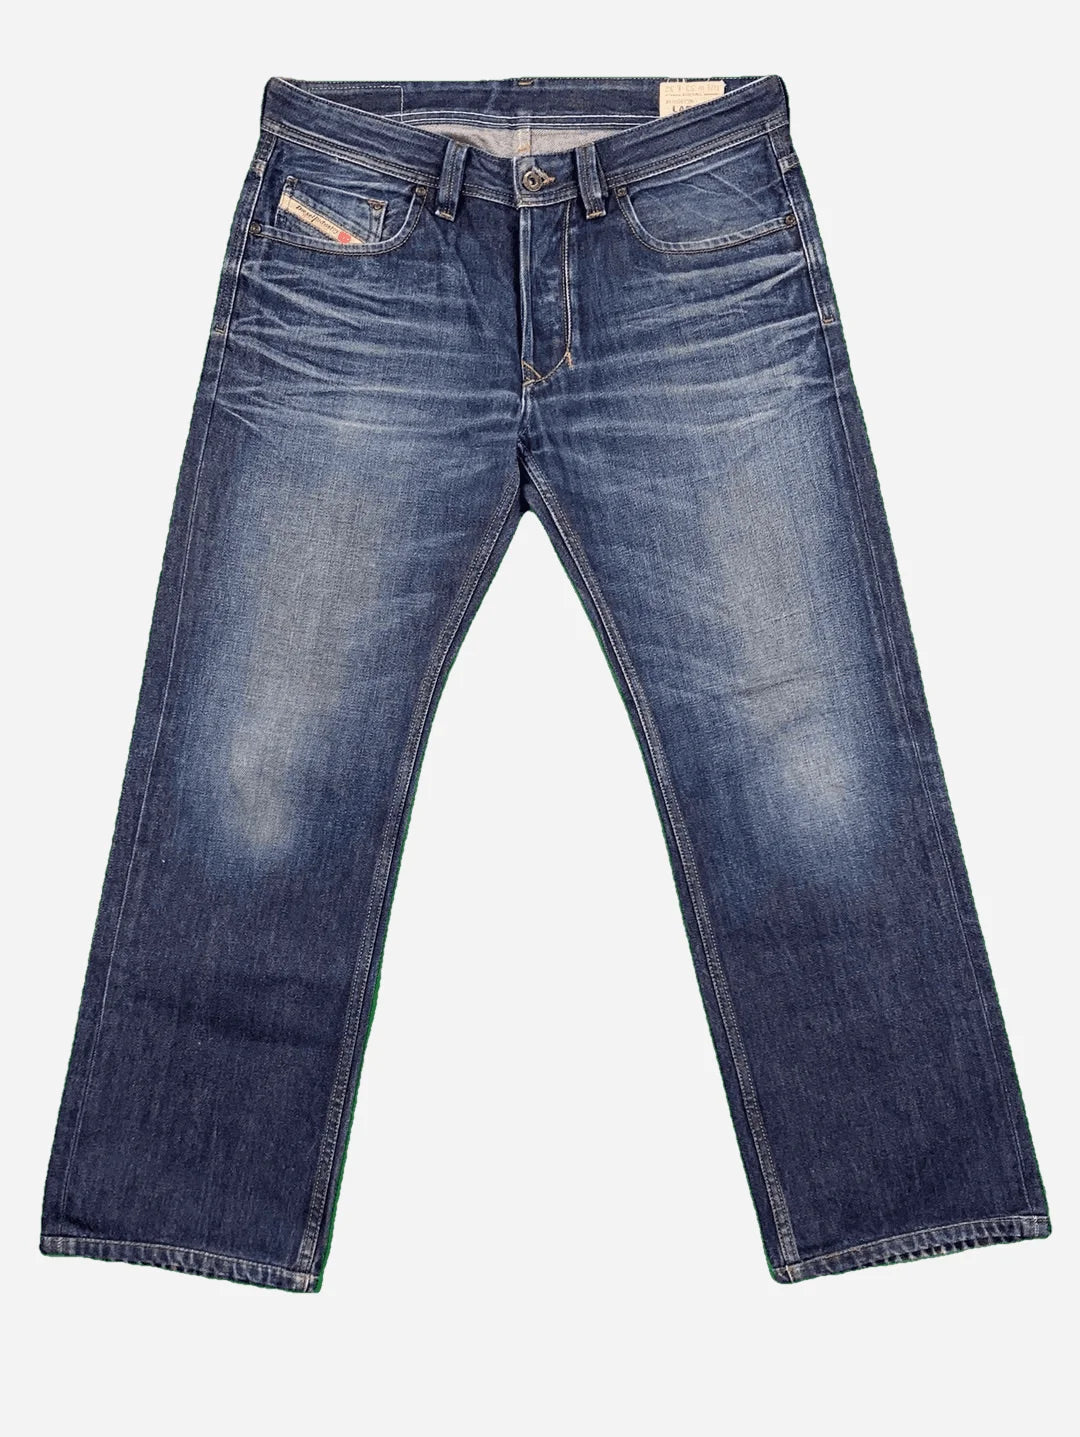 Diesel Larkee Jeans 34/32 (M)